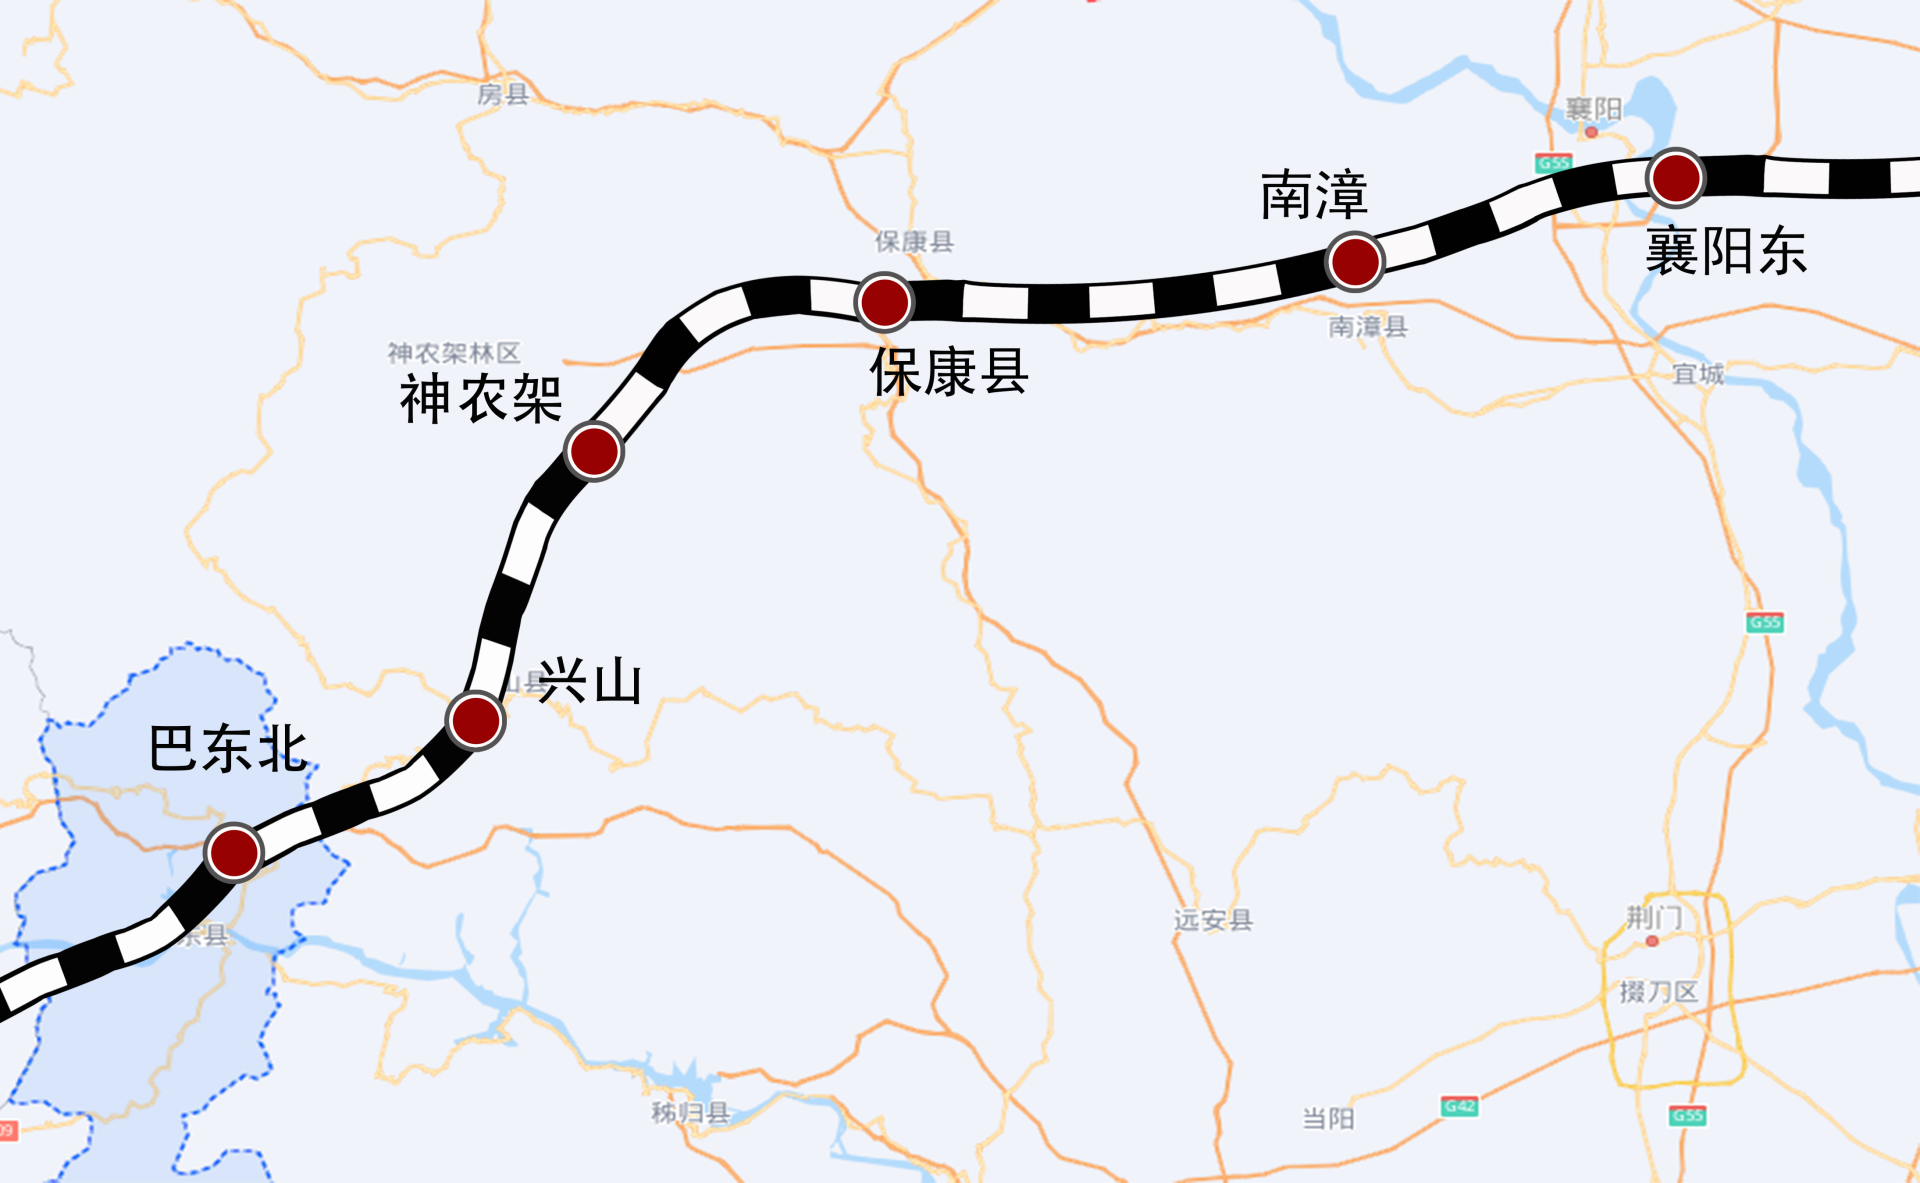 此次开展联调联试的襄阳东至巴东北段线路长度192公里,为双线客运专线